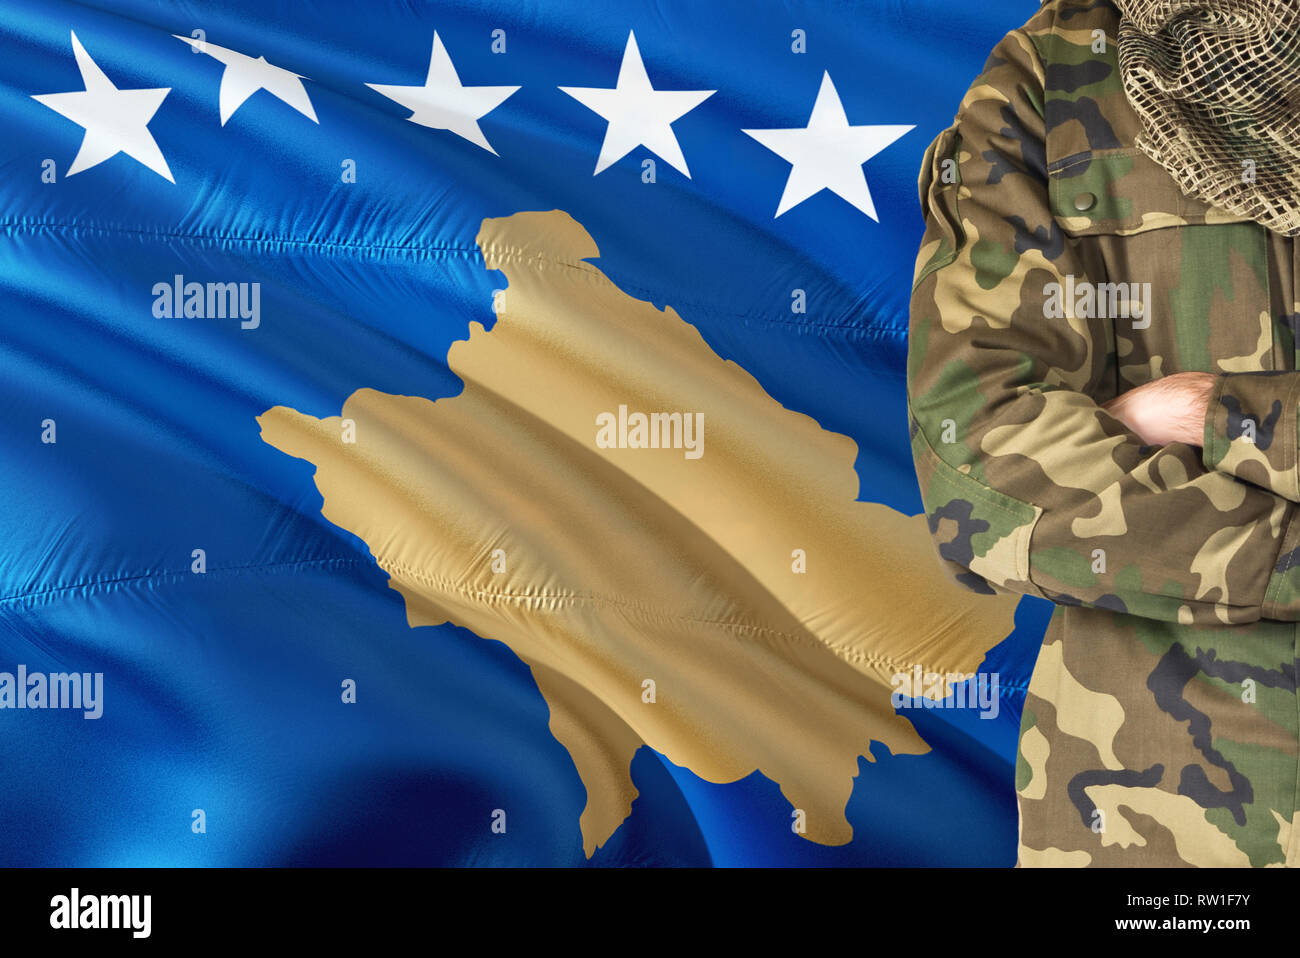 Gekreuzte Arme Soldat mit nationalen wehende Flagge auf Hintergrund - im Kosovo Thema. Stockfoto